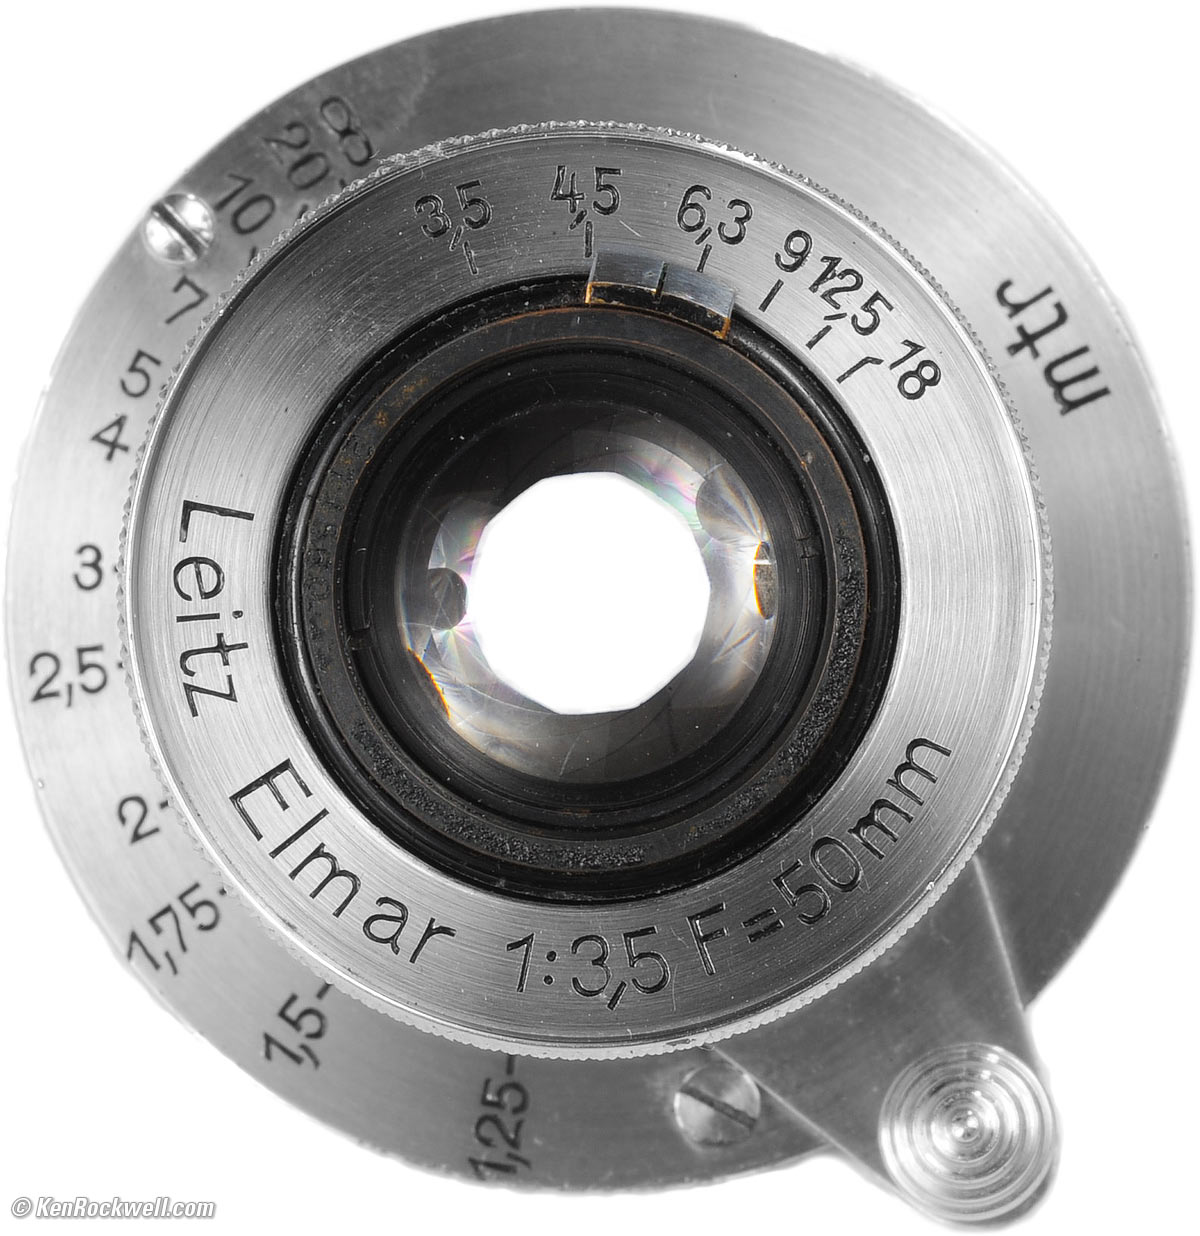 安いセール ★極上美品★ ライカ LEITZ ELMAR 50mm F3.5 L 沈胴 レンズ(単焦点)